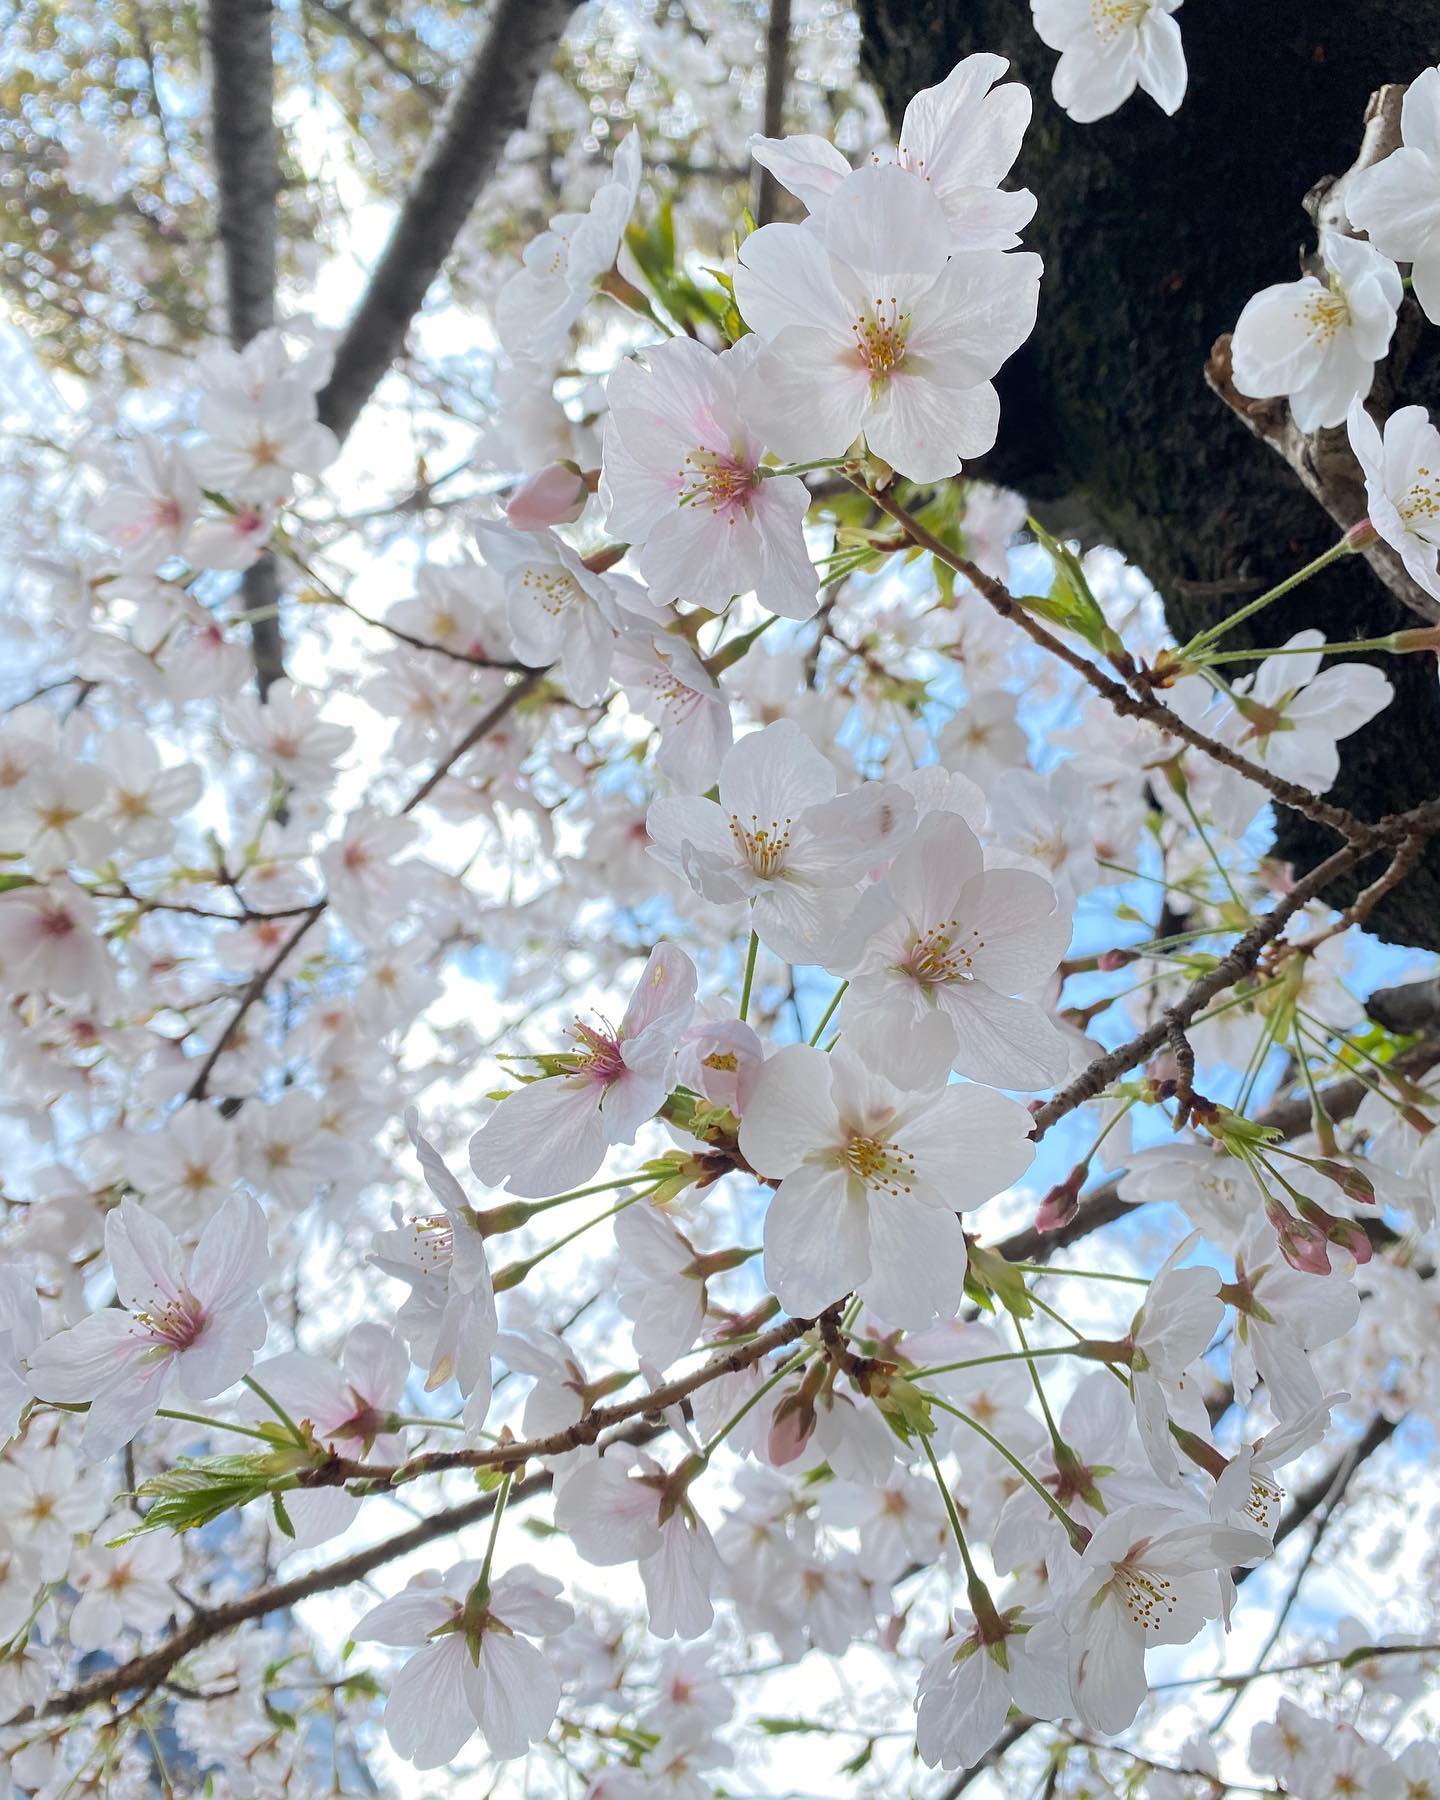 今日（2021/3/25）の桜。@松山市コミュニティセンター朝の雨が何だったの？というぐらいの、青空が広がっているお昼。桜の花は、やっぱり青空がよく映えますねぇ。#桜 #サクラ #松山市 #青空 #満開